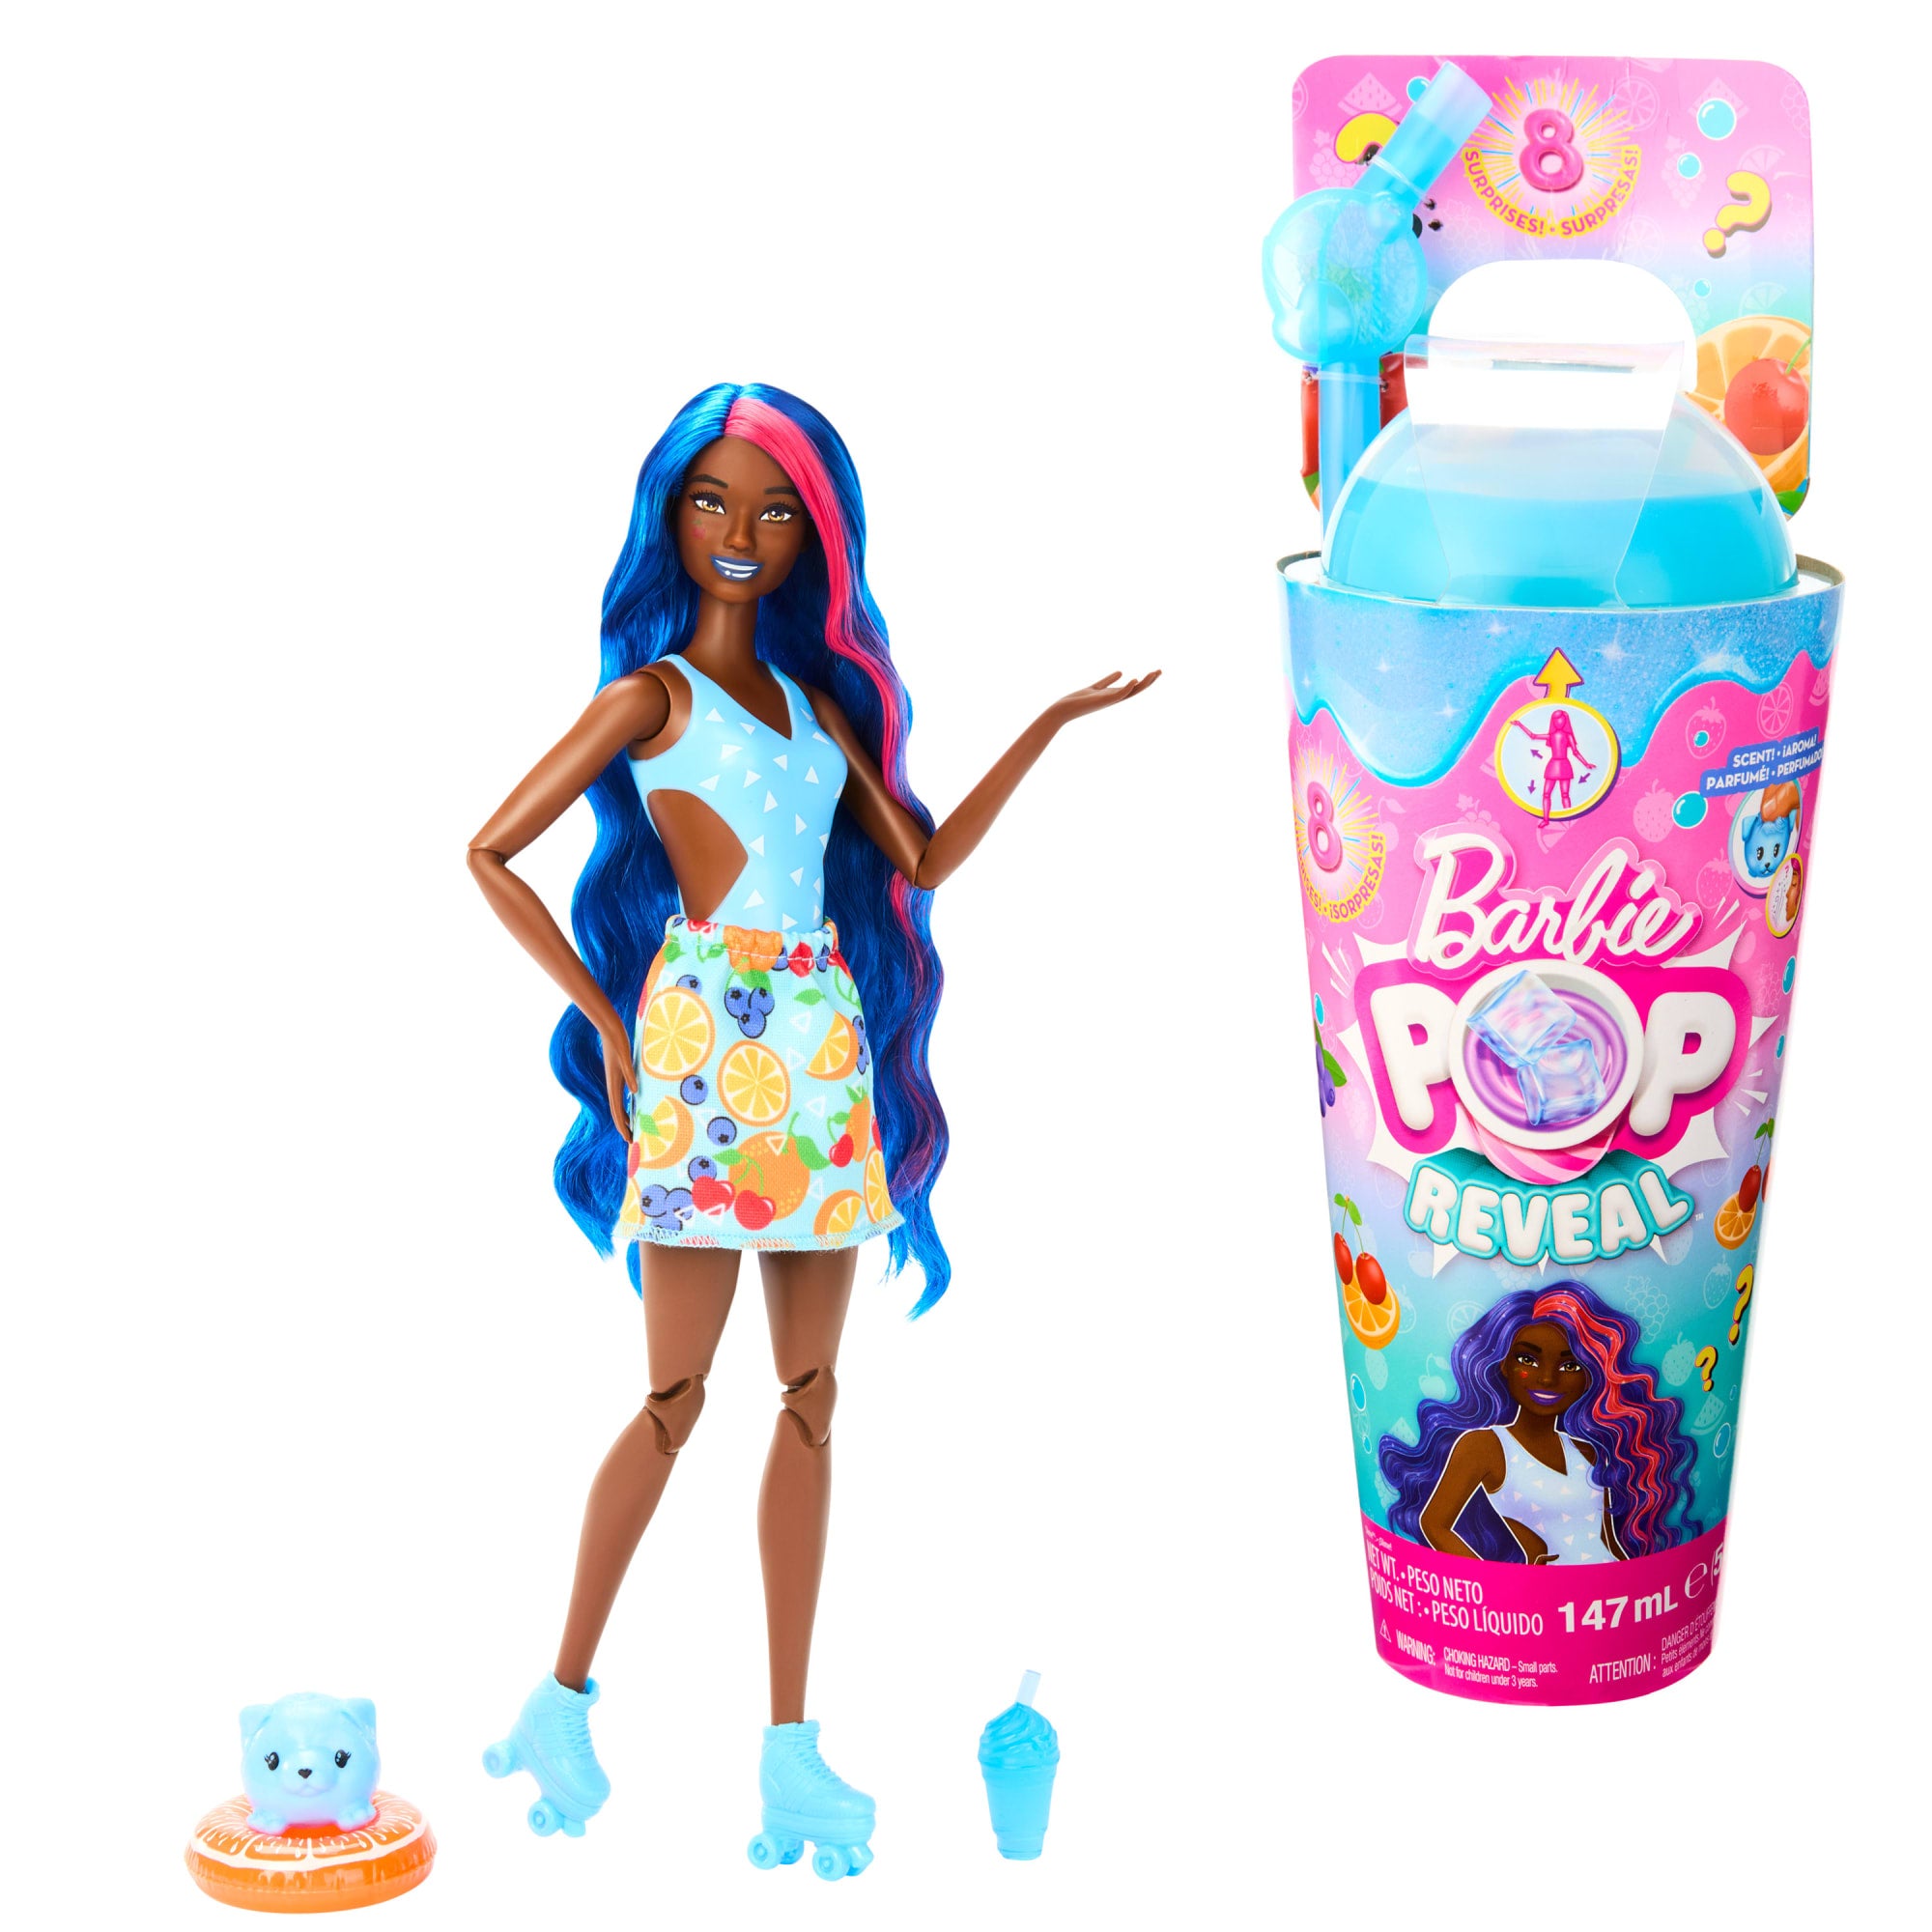 Barbie-Pop Reveal Série Fruit-Poupée parfum punch avec 8 surprises | Mattel